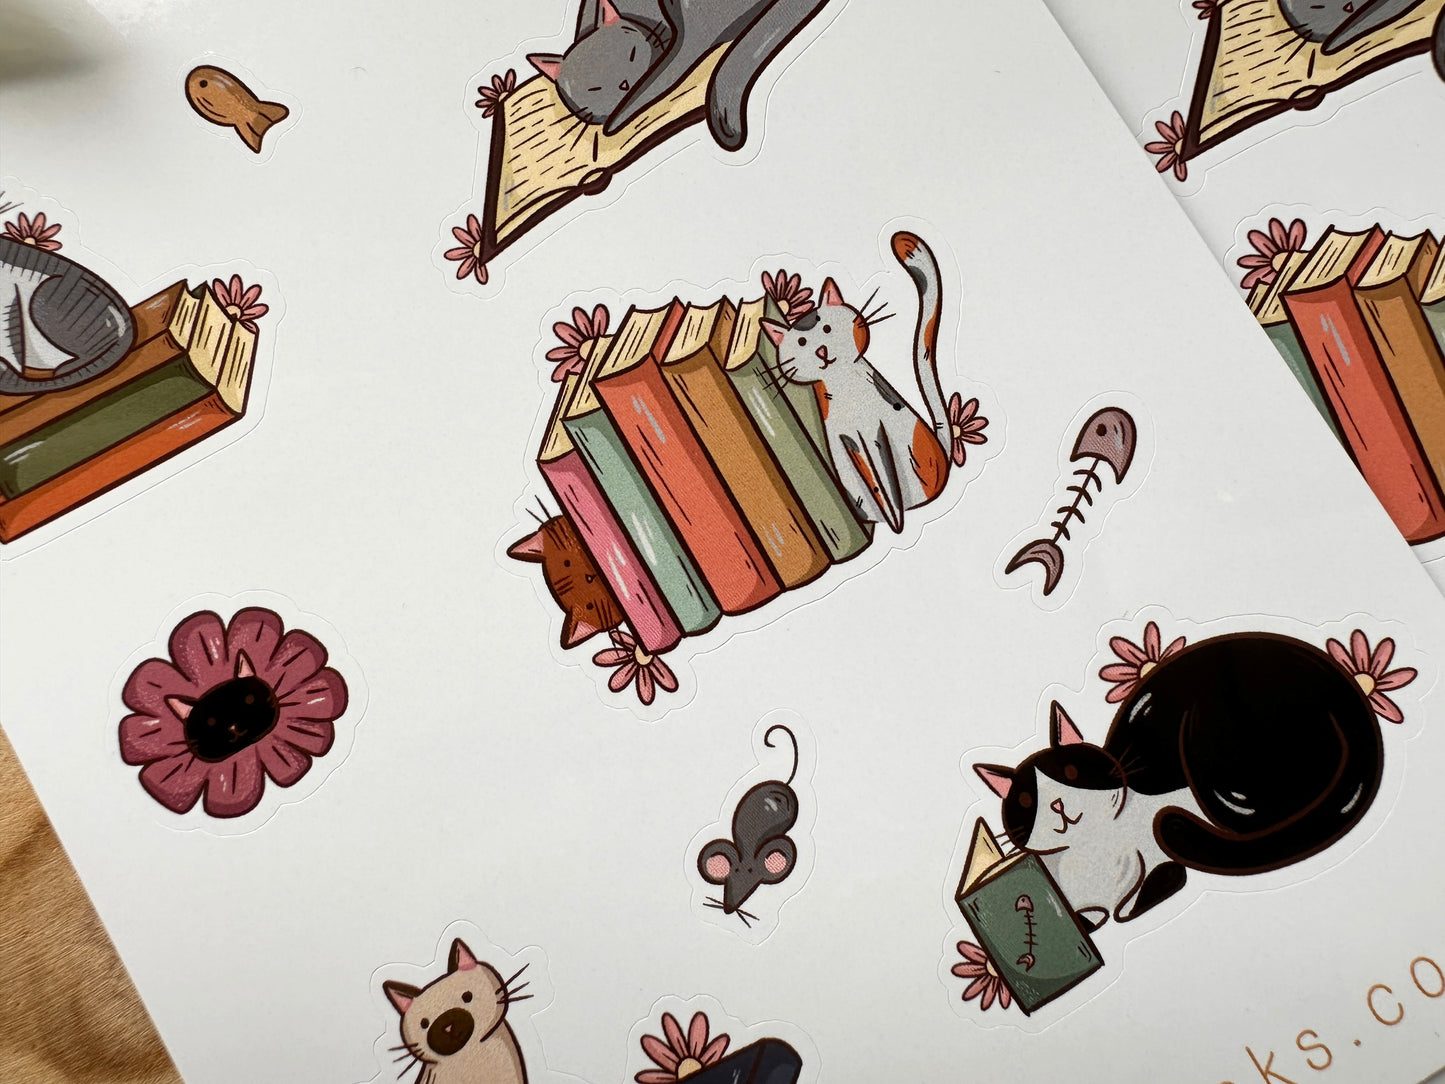 Cats & Books Sticker Sheet